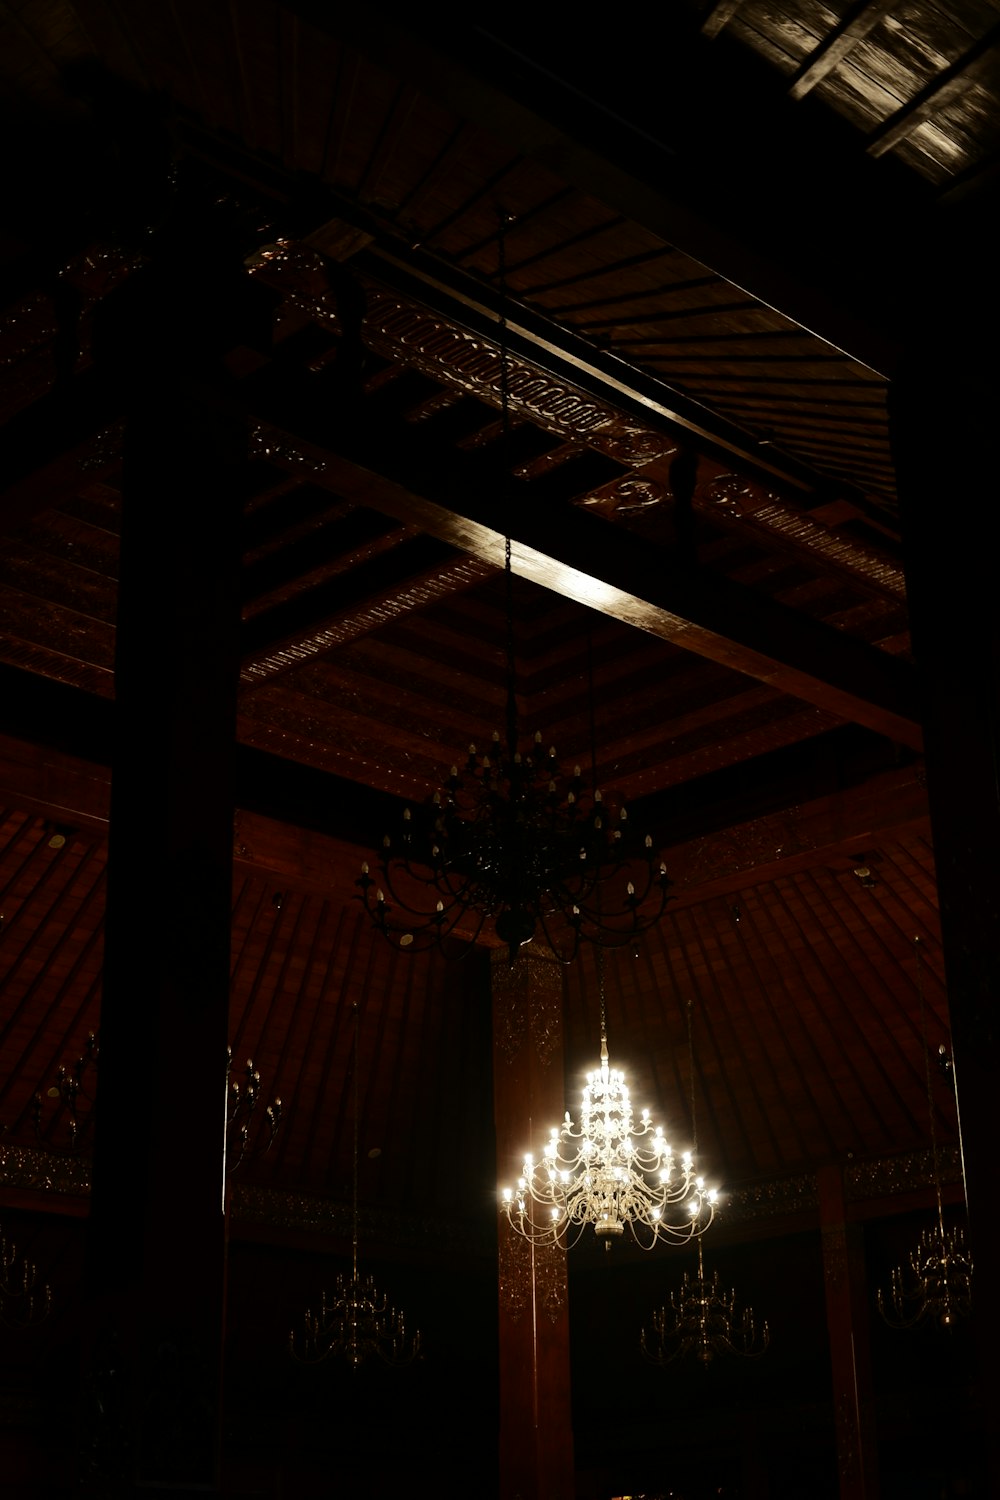 Un candelabro colgando del techo en una habitación oscura